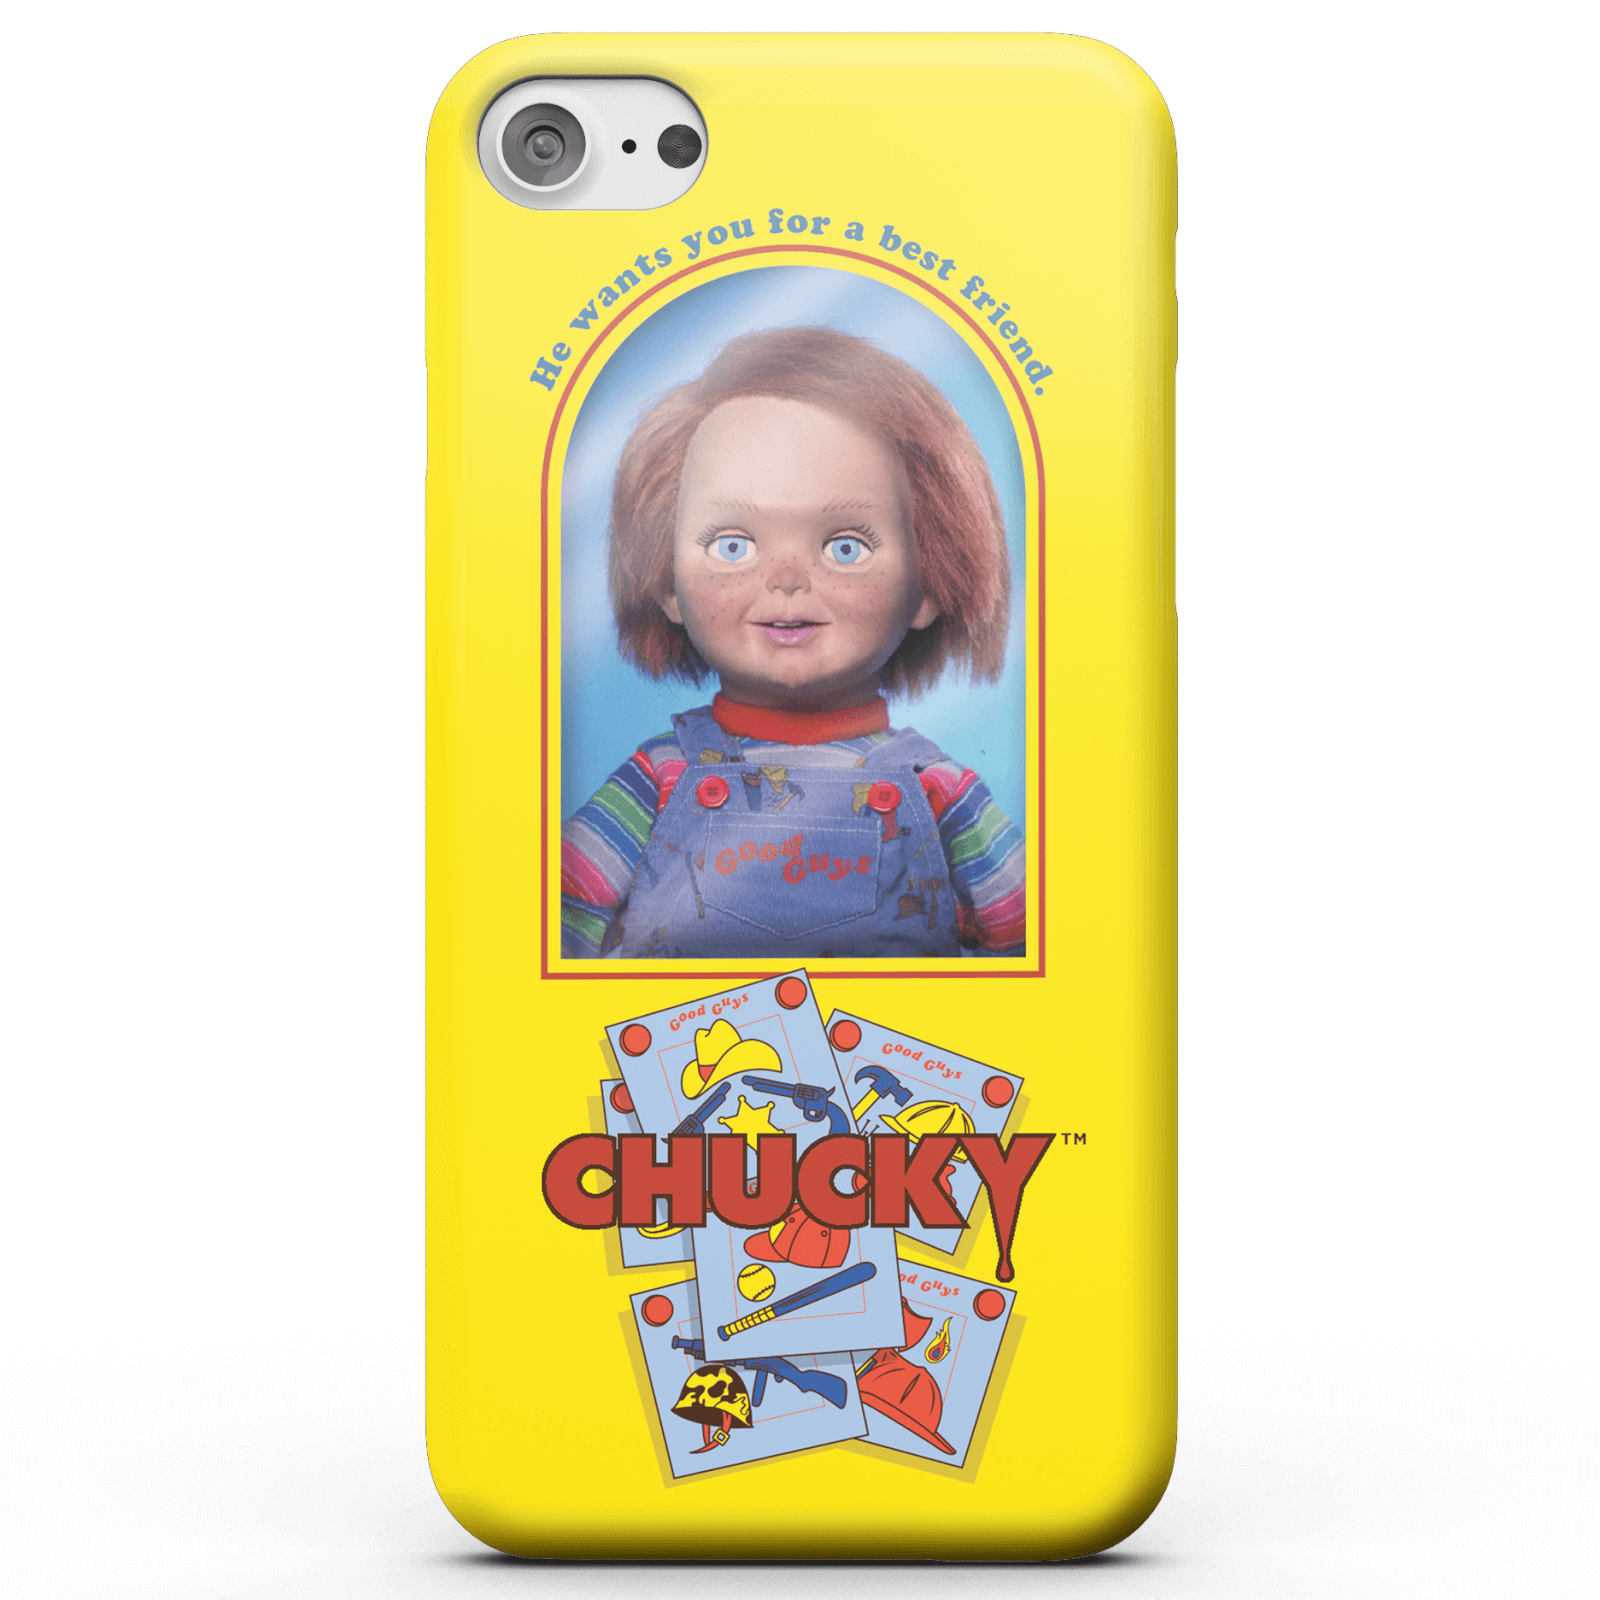 Chucky Good Guys Doll Smartphone Hülle für iPhone und Android - iPhone 5/5s - Snap Hülle Matt von Chucky